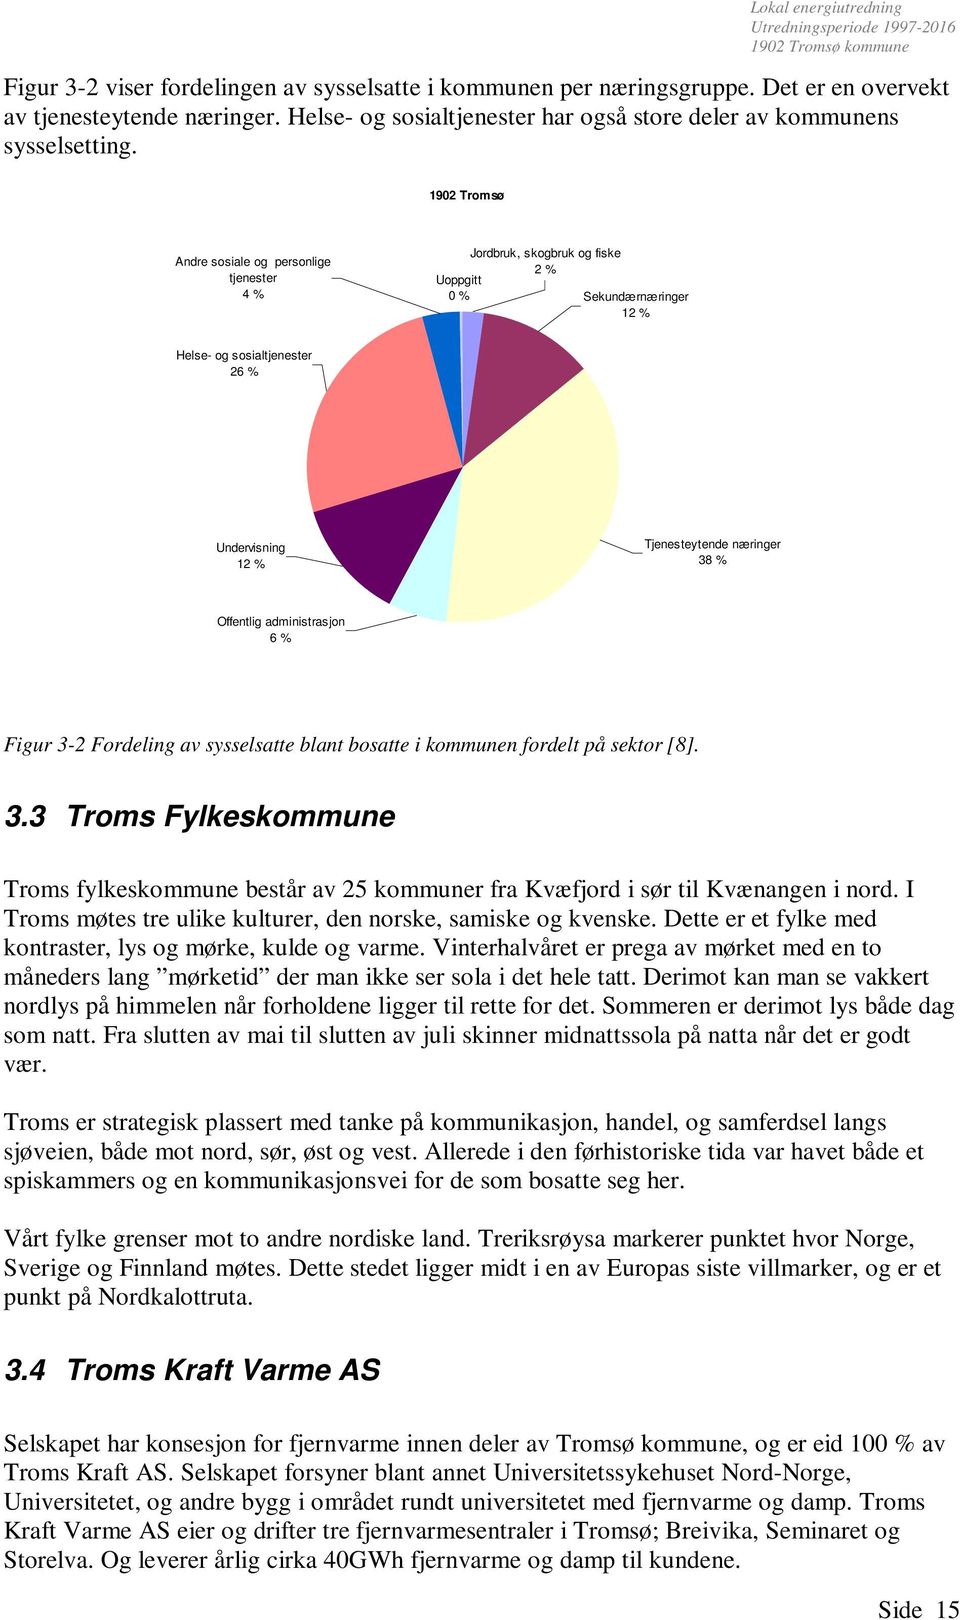 1902 Tromsø Andre sosiale og personlige tjenester 4 % Uoppgitt 0 % Jordbruk, skogbruk og fiske 2 % Sekundærnæringer 12 % Helse- og sosialtjenester 26 % Undervisning 12 % Tjenesteytende næringer 38 %